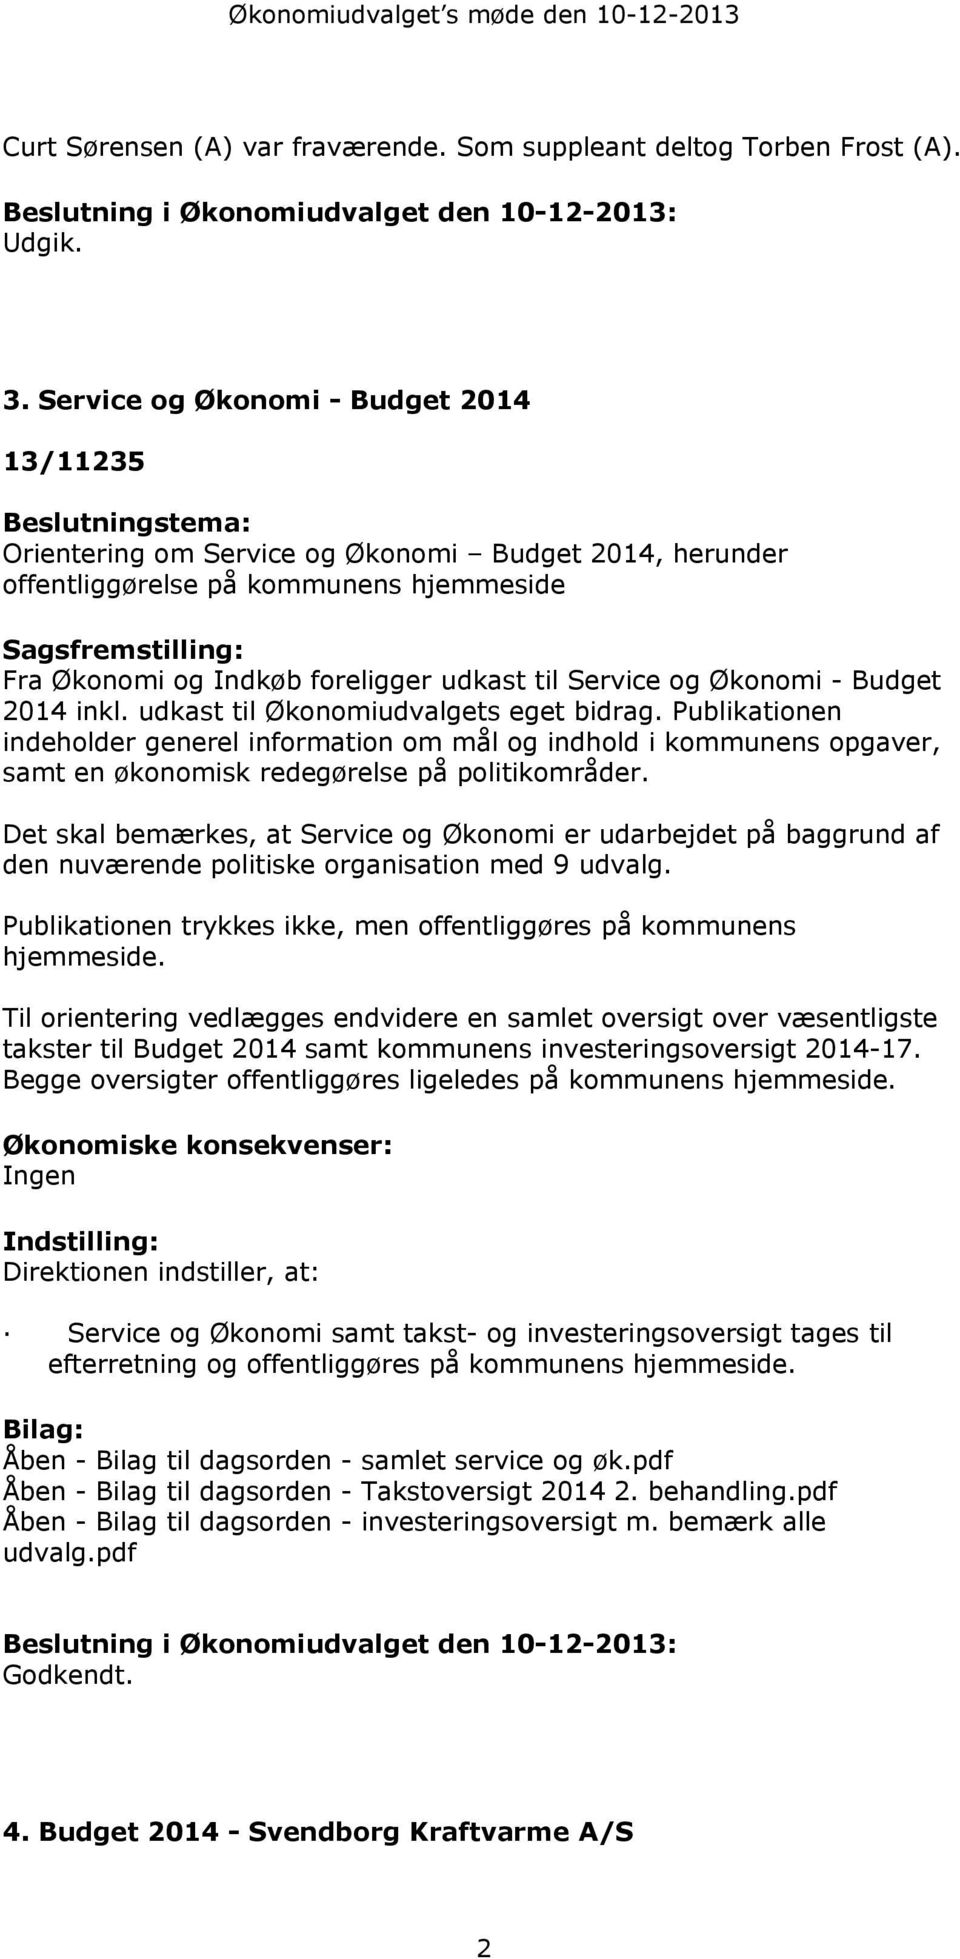 foreligger udkast til Service og Økonomi - Budget 2014 inkl. udkast til Økonomiudvalgets eget bidrag.